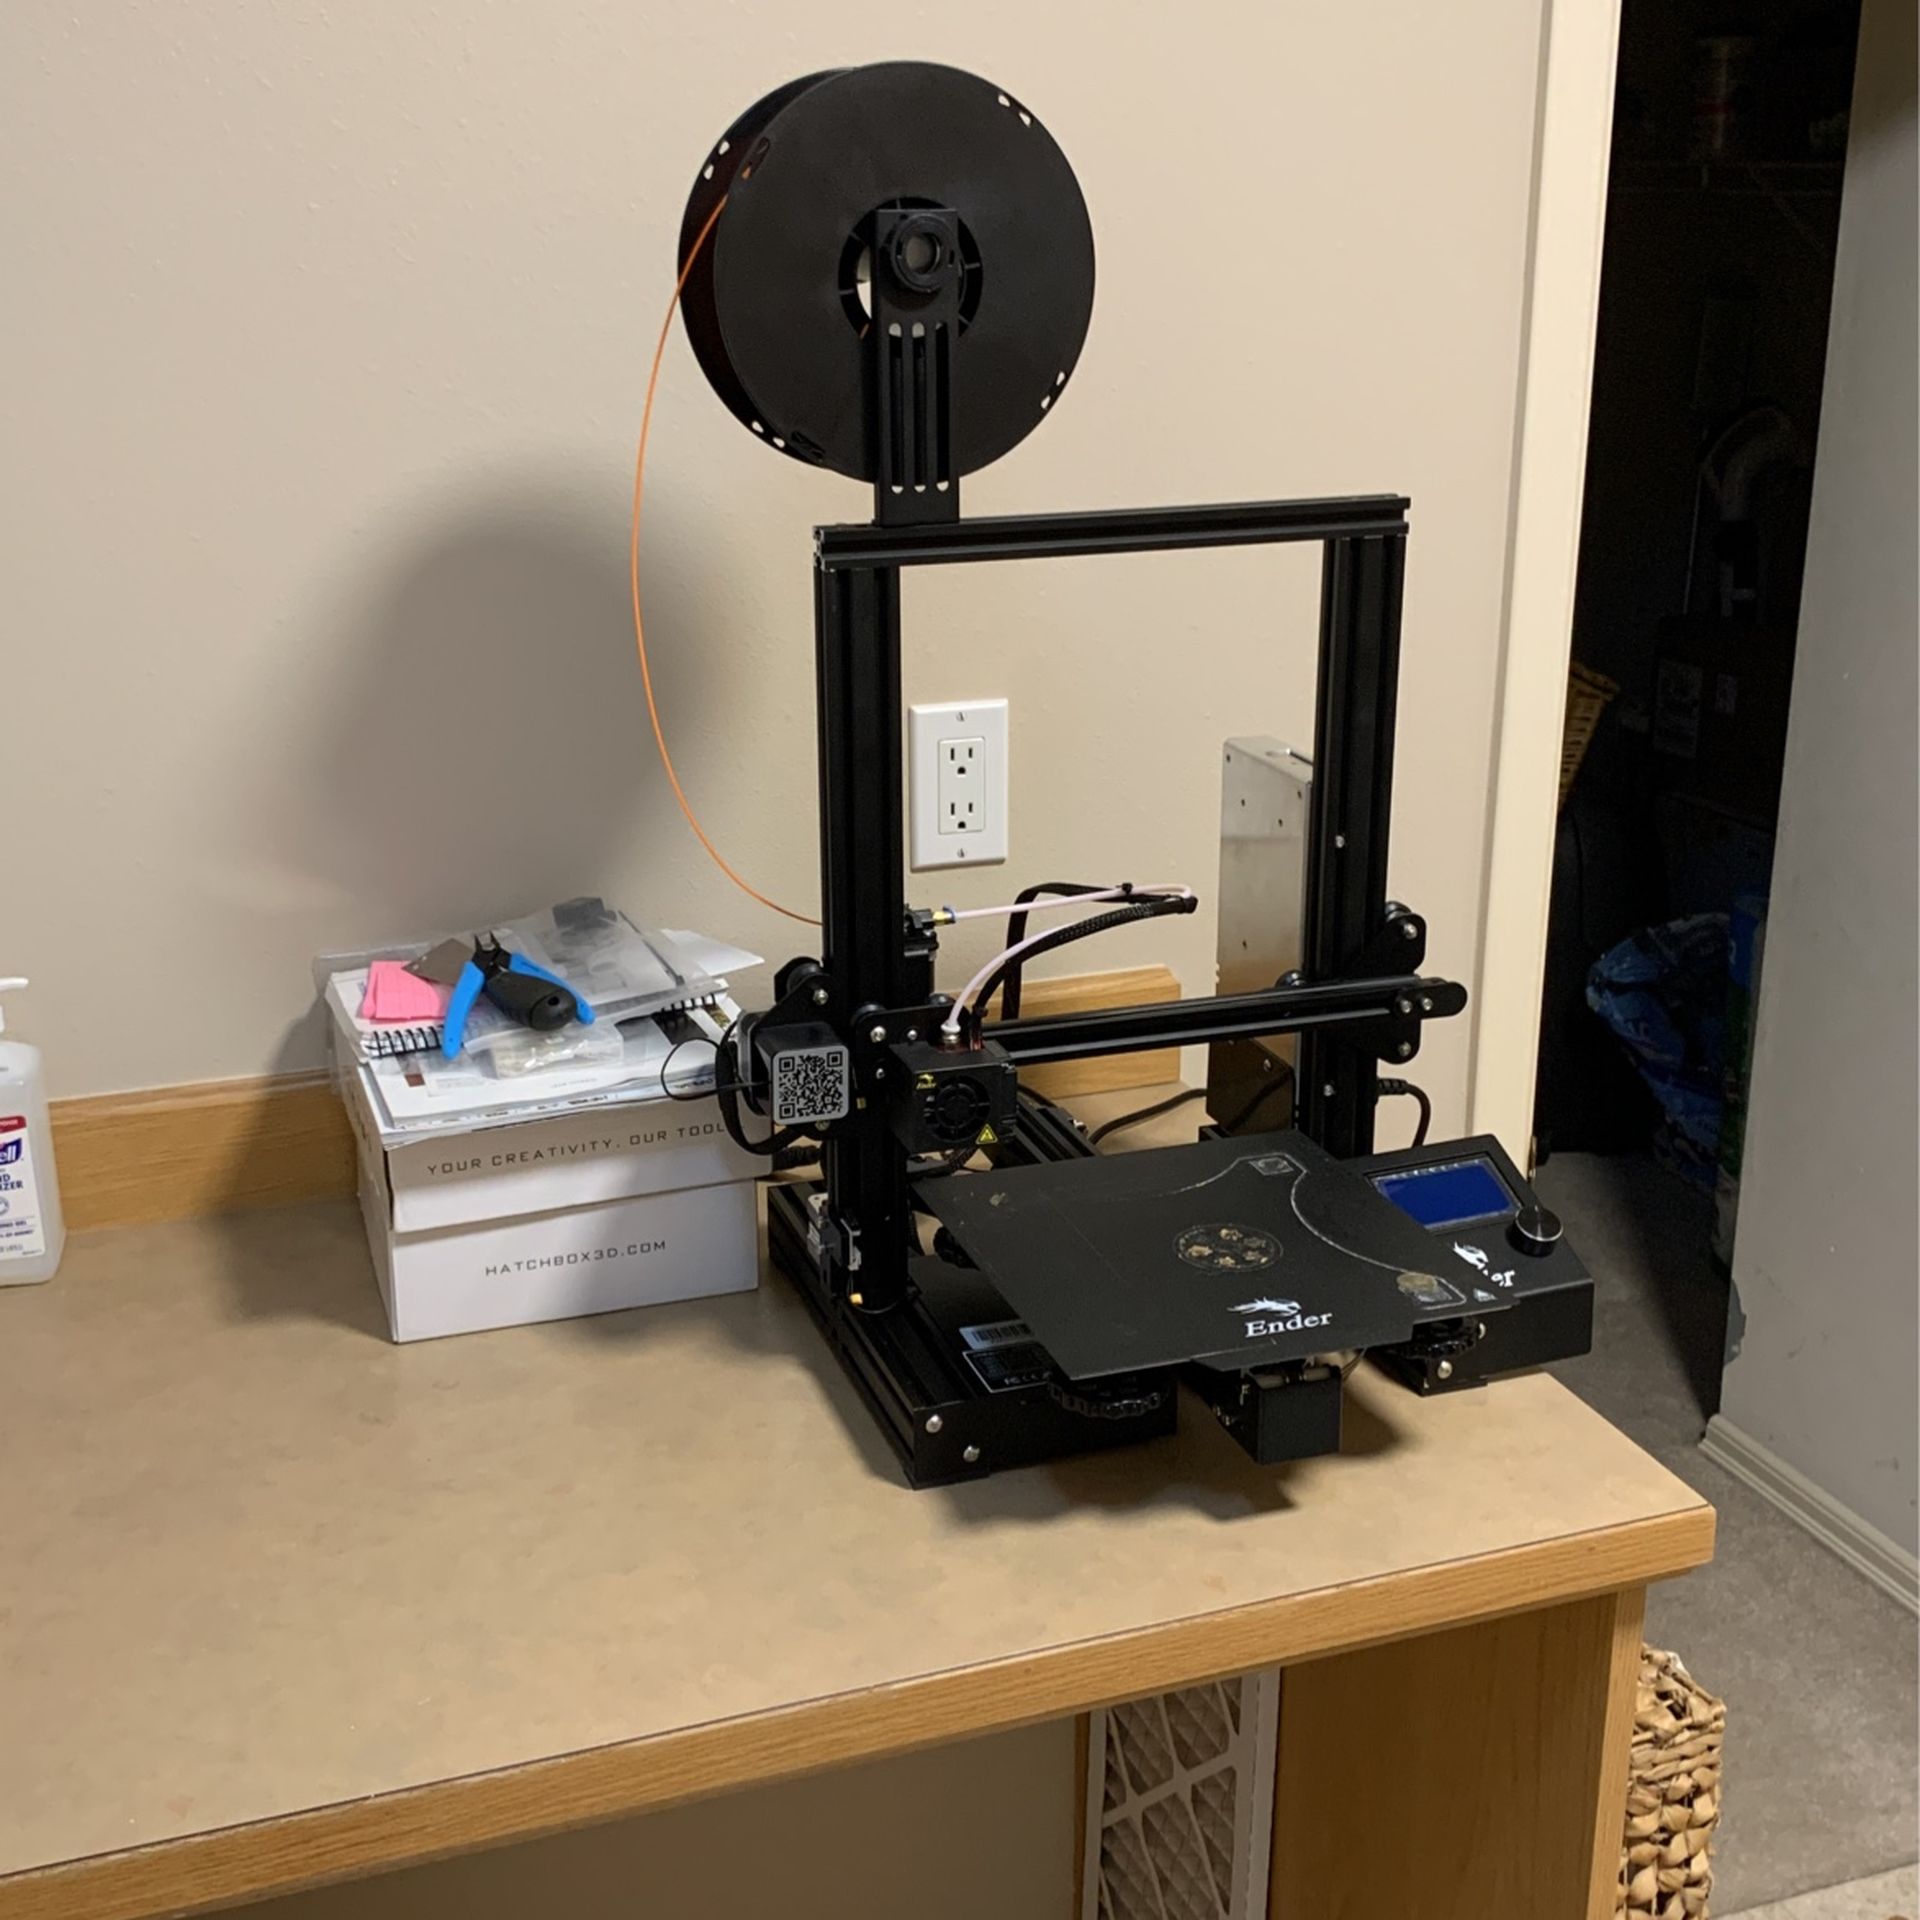 Creality Ender 3 Pro 3D Printer + 2 Spools Of Filament